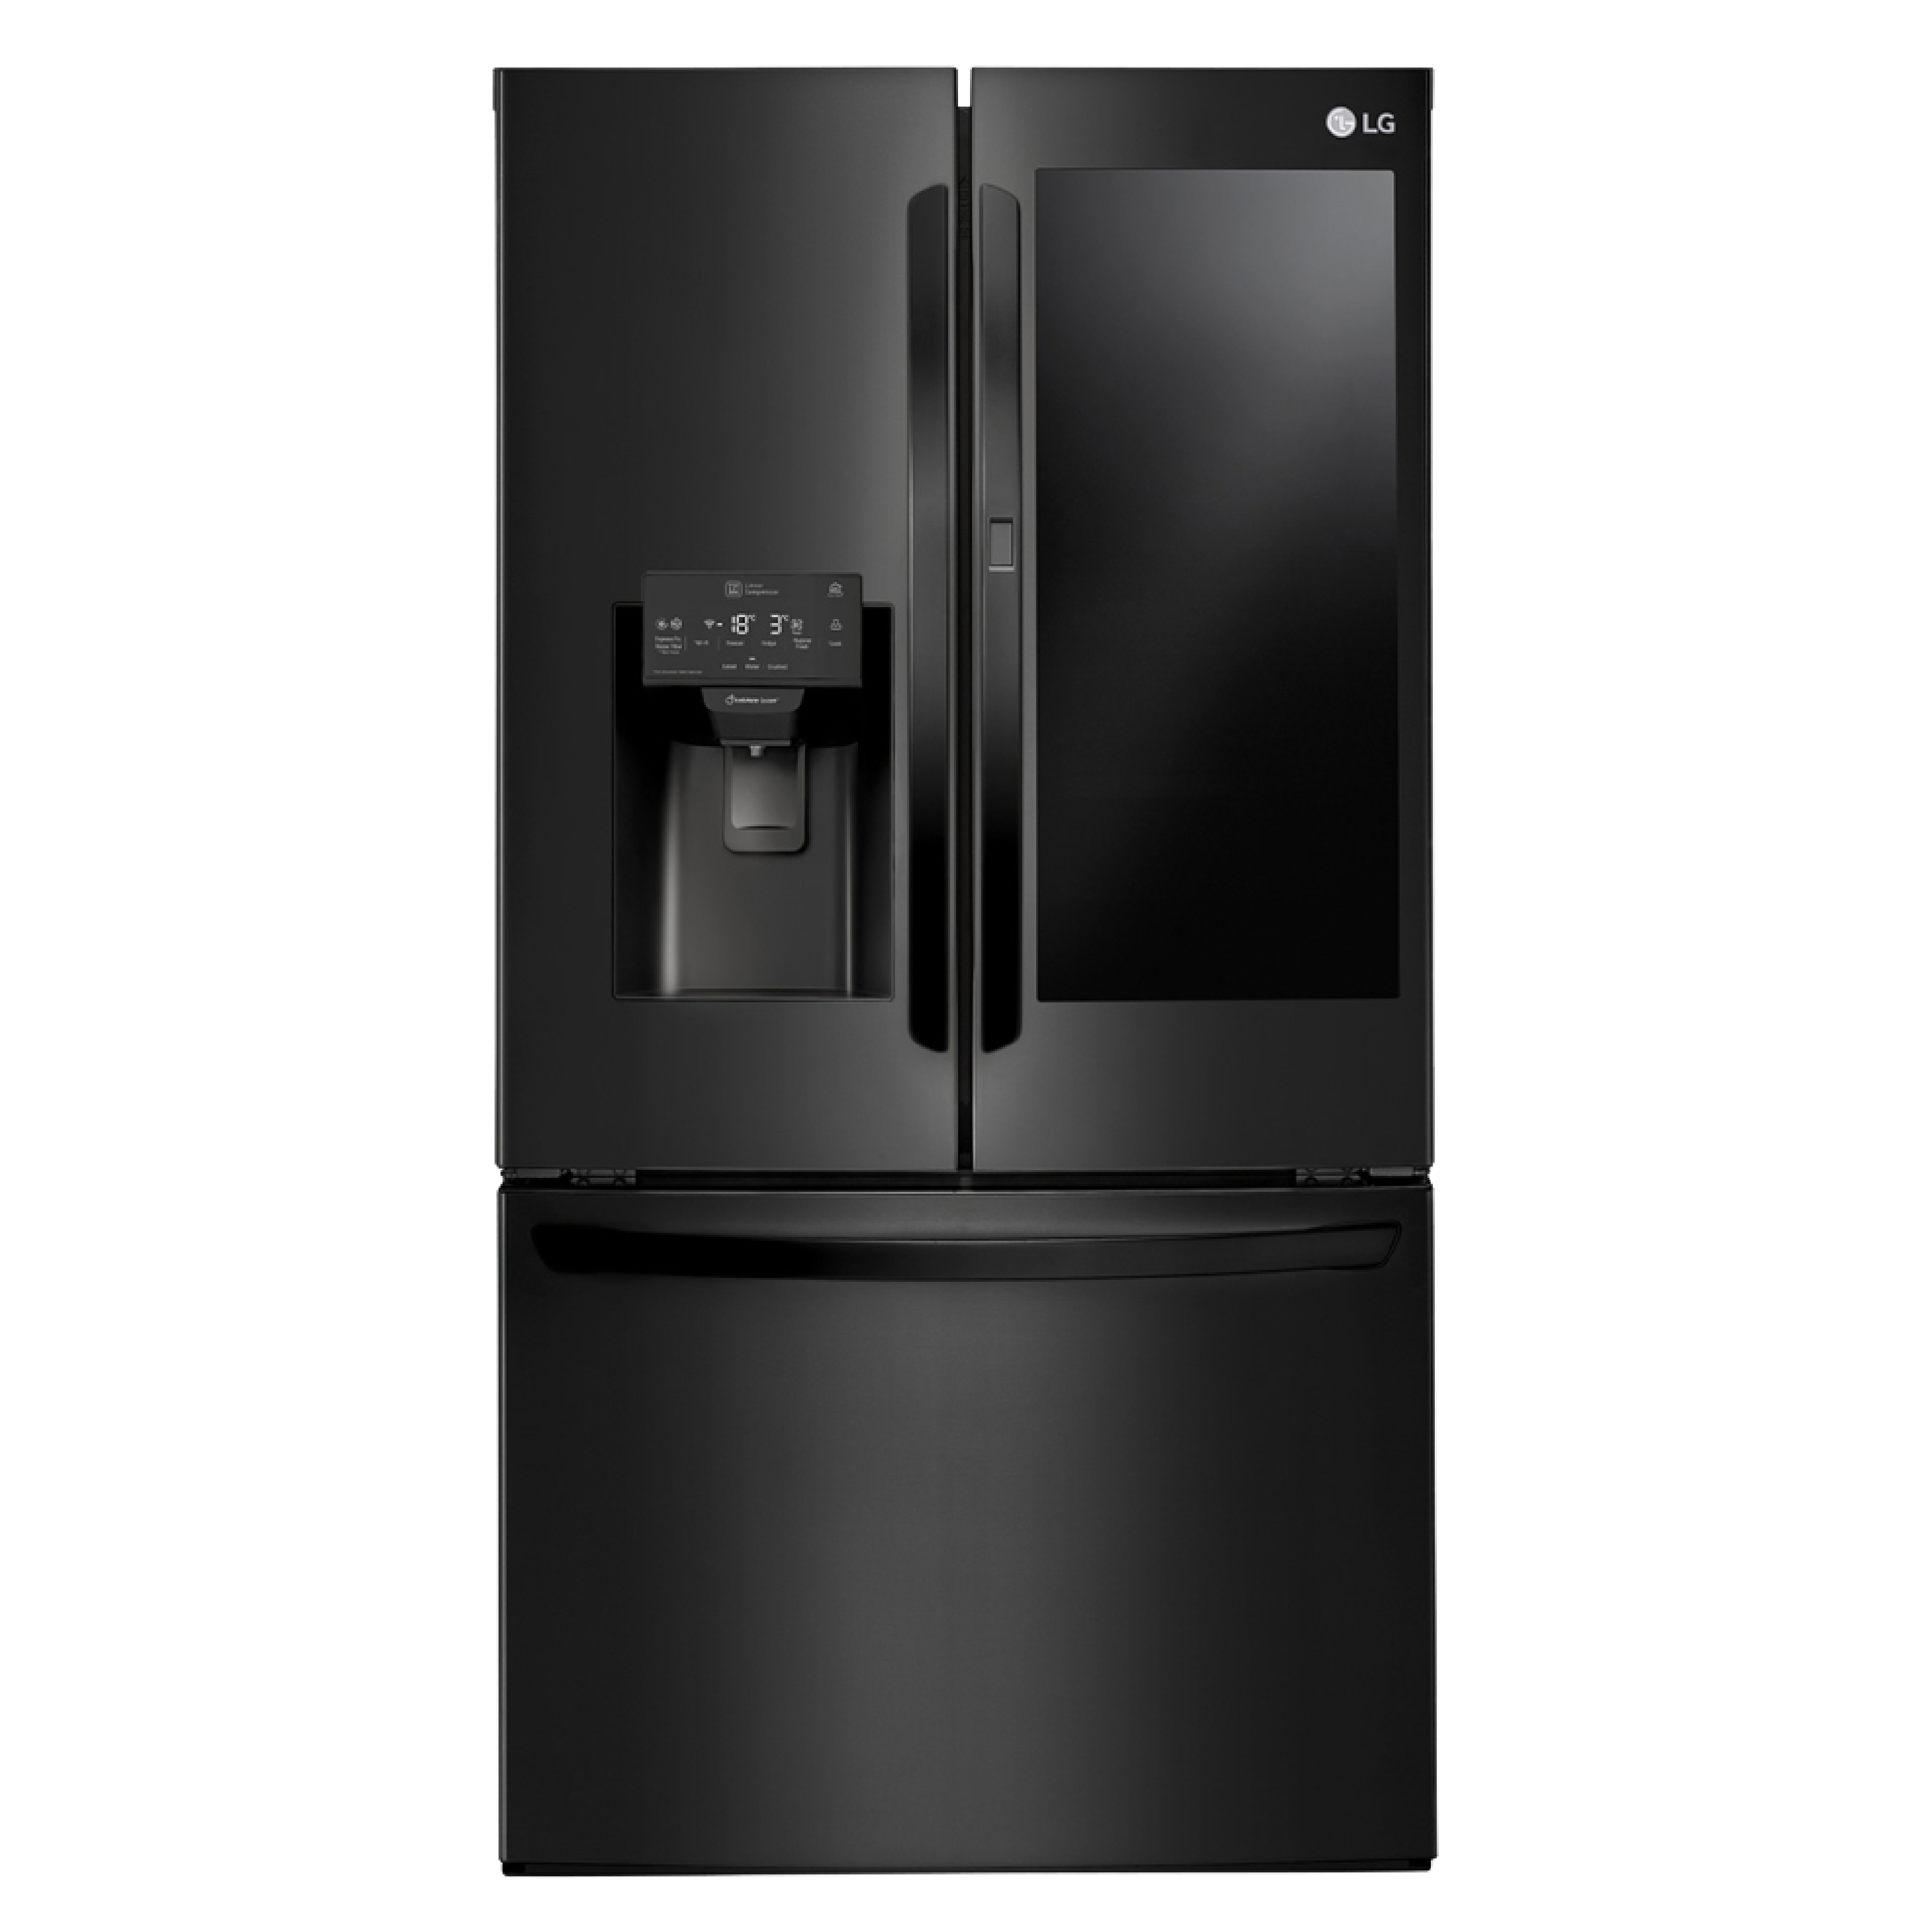 Encuentra la refrigeradora LG LM78SXT con controlador de humedad para verdura, bloqueo para niños y el mejor precio solo en Gran Hogar Online.